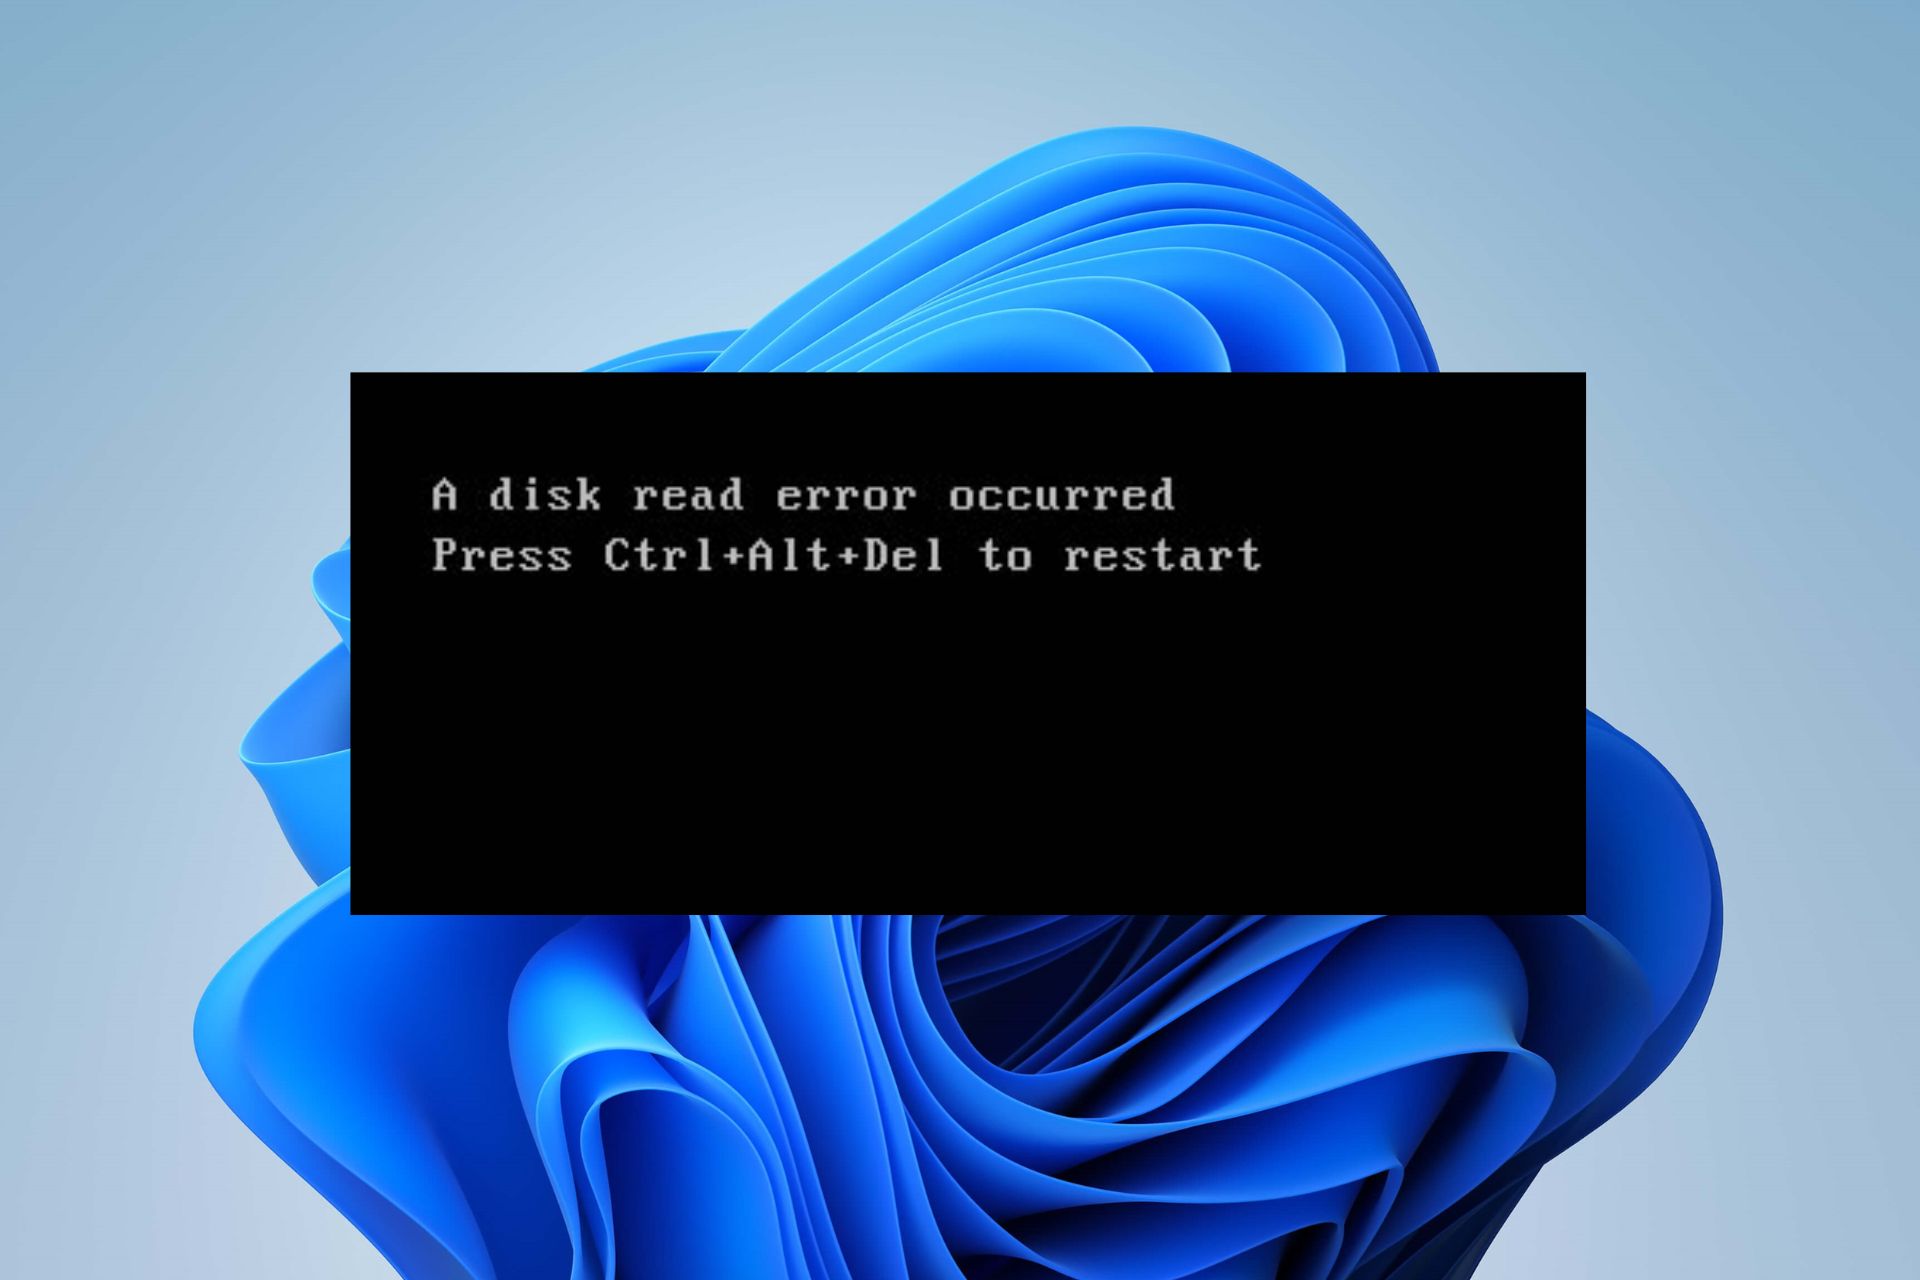 Fix A Disk Read Error Occurred